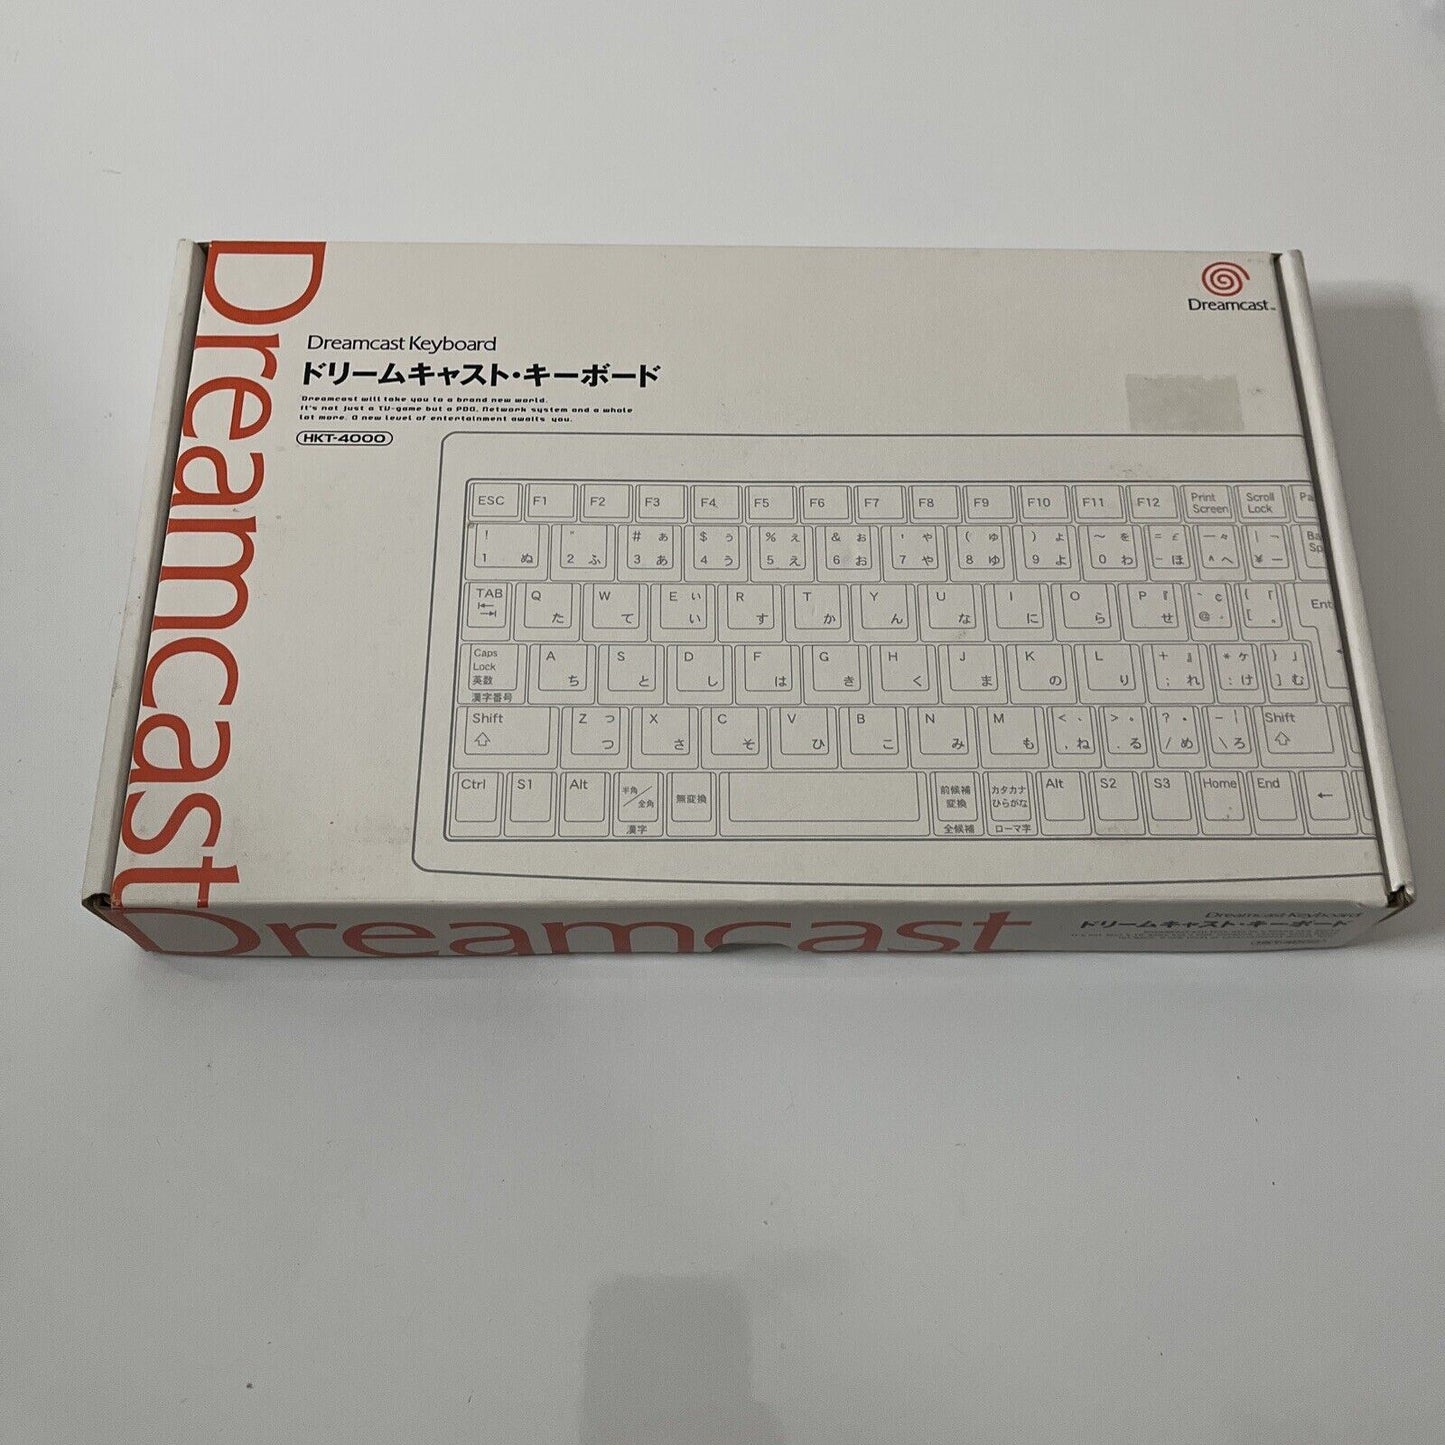 Official Sega Dreamcast Keyboard HKT-4000 NEW